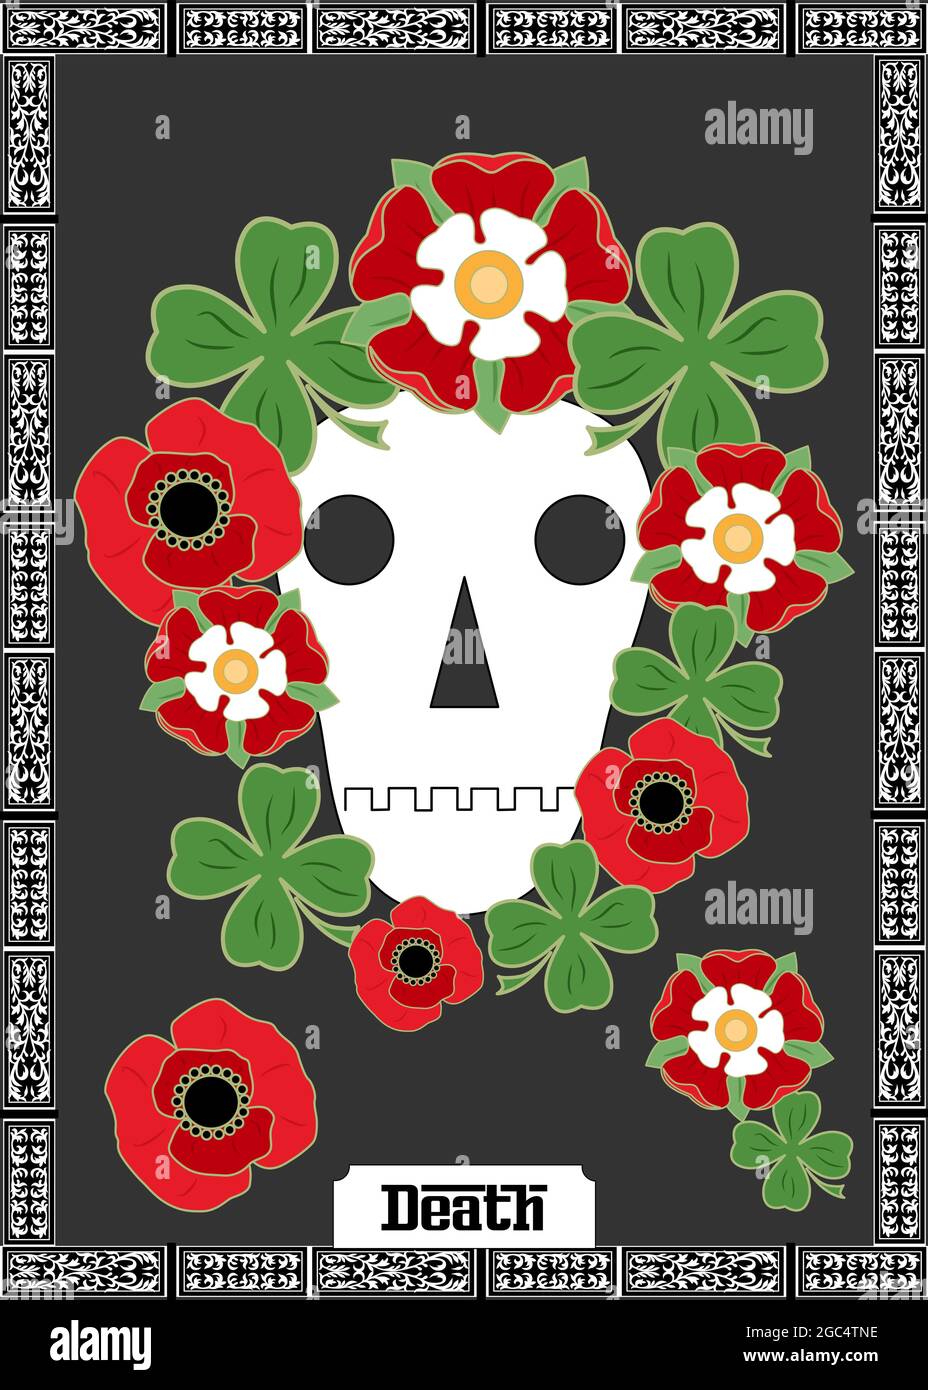 Tarot card death Stock Vector